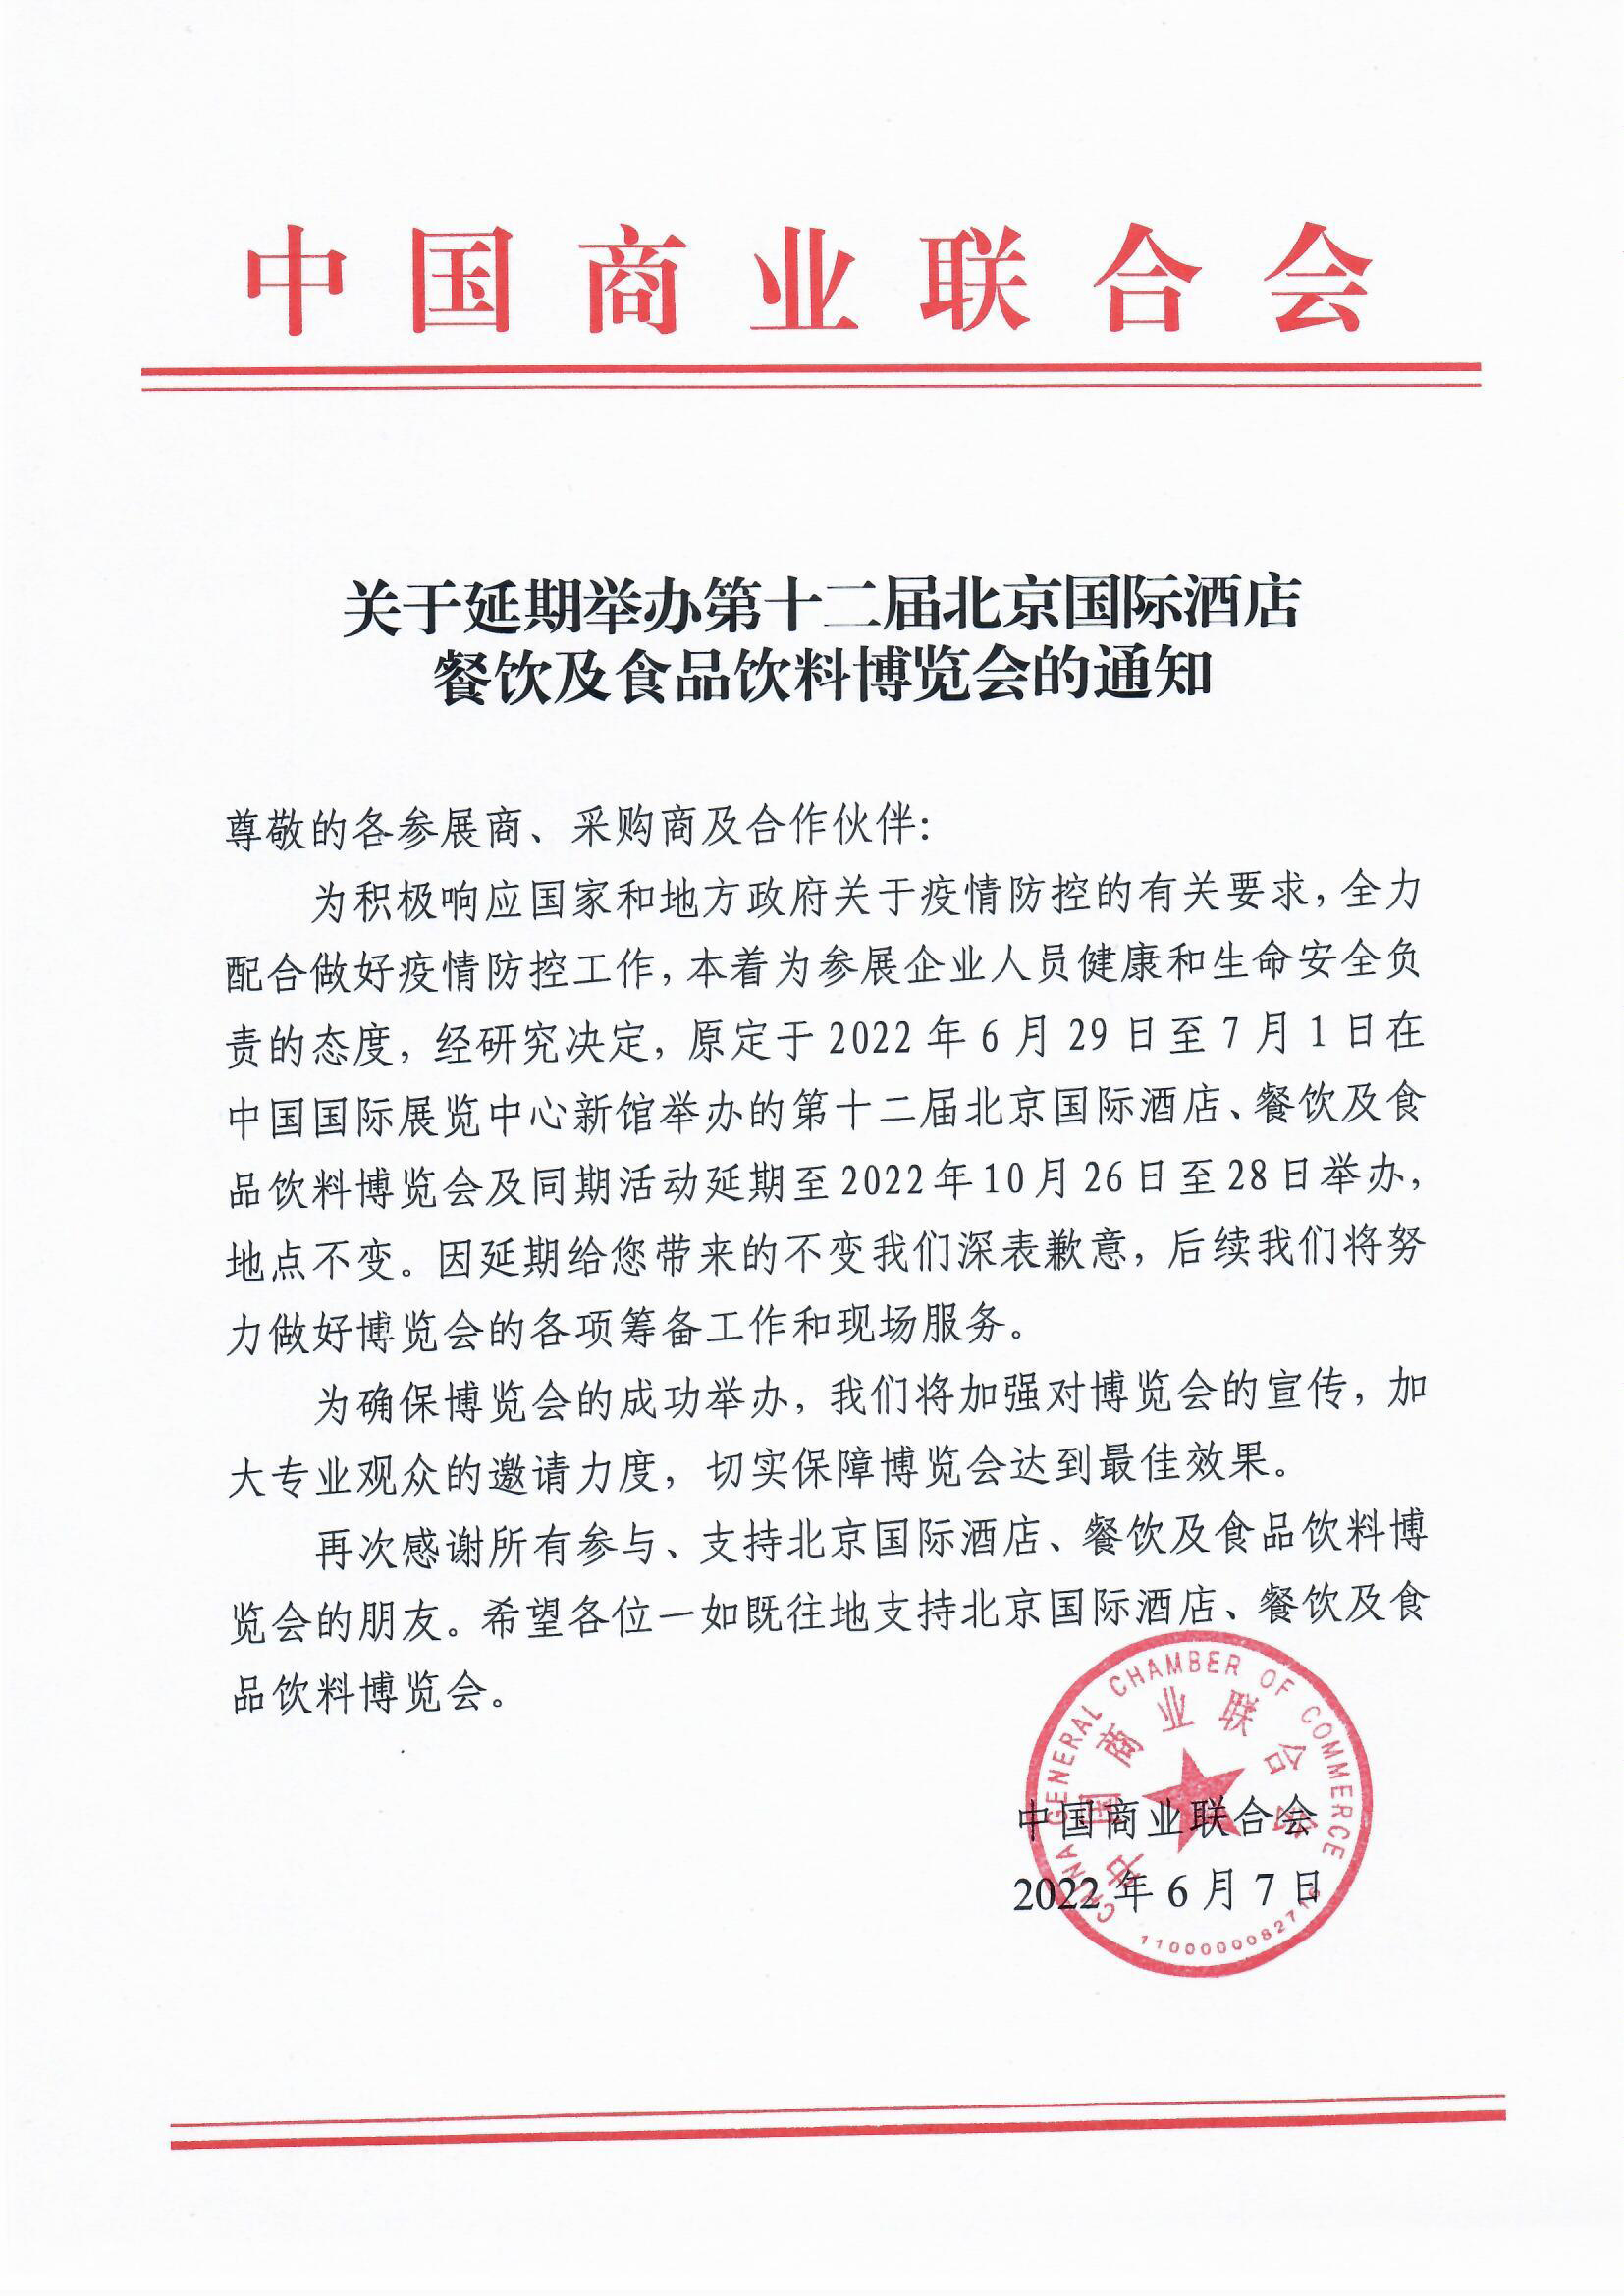 關于延期舉辦第十二屆北京國際酒店、餐飲及食品飲料博覽會的通知(圖1)